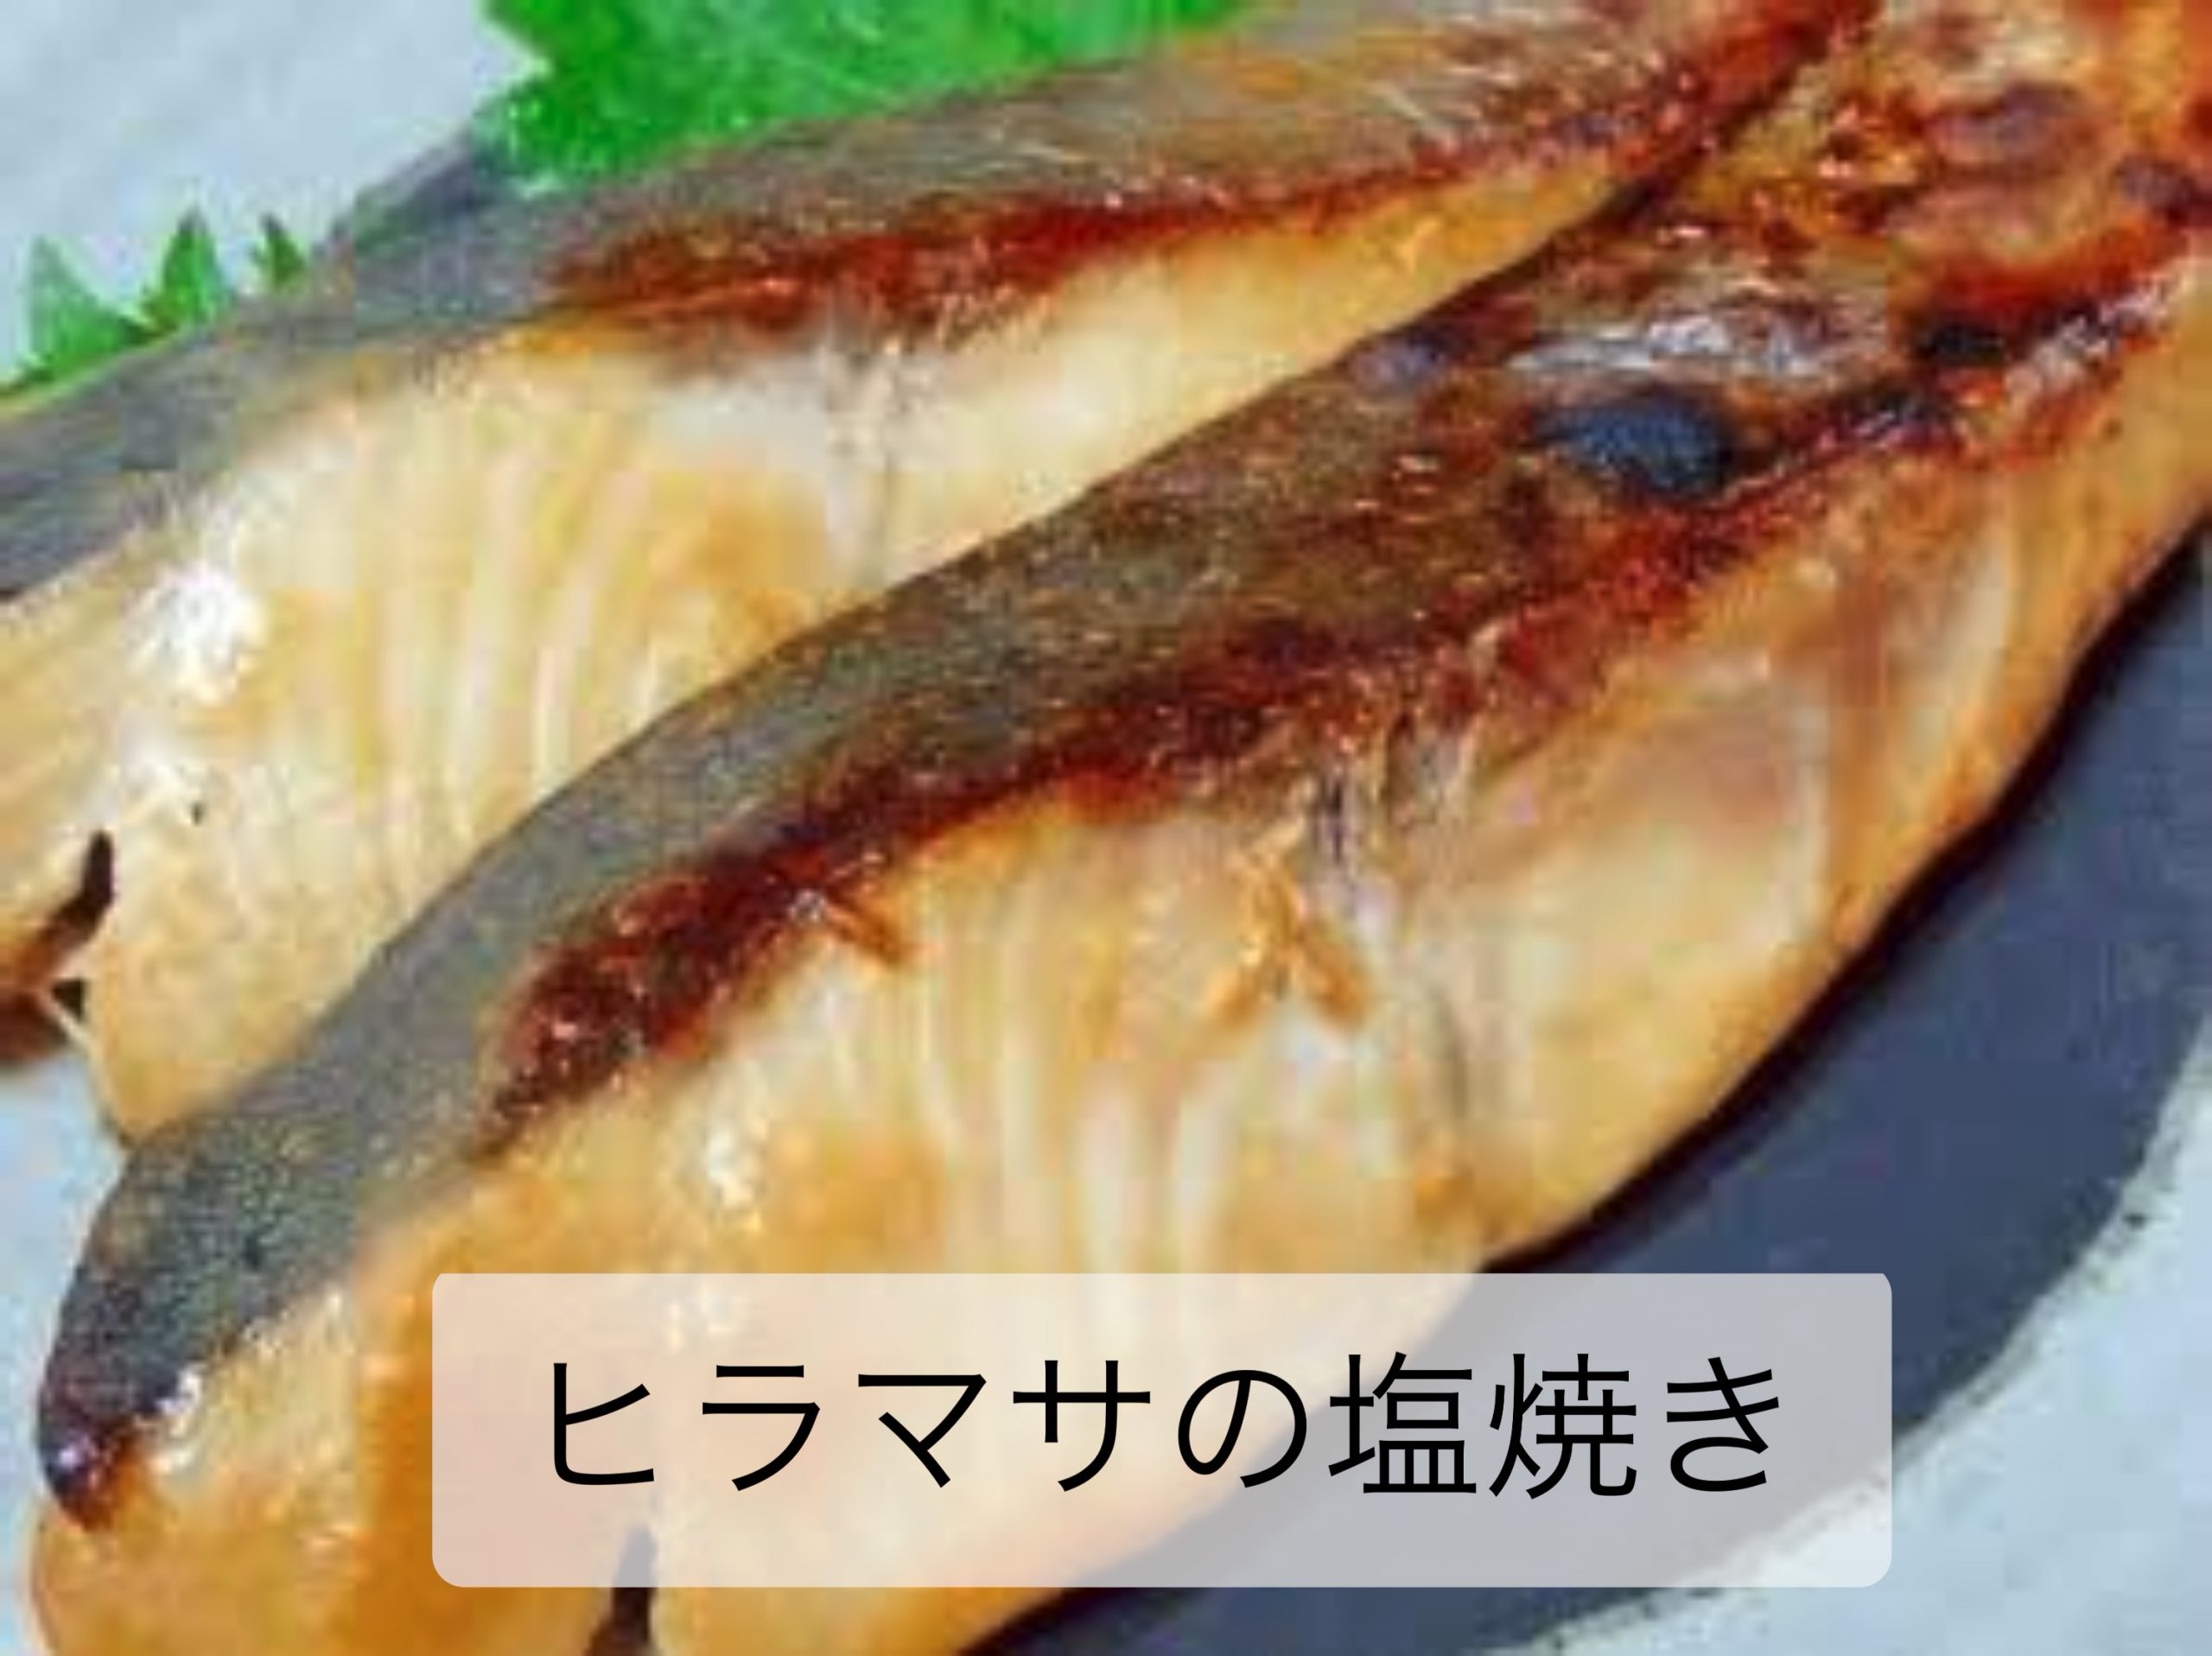 ヒラマサの塩焼き 海の恵み 食の底力 Japan 公式レシピサイト